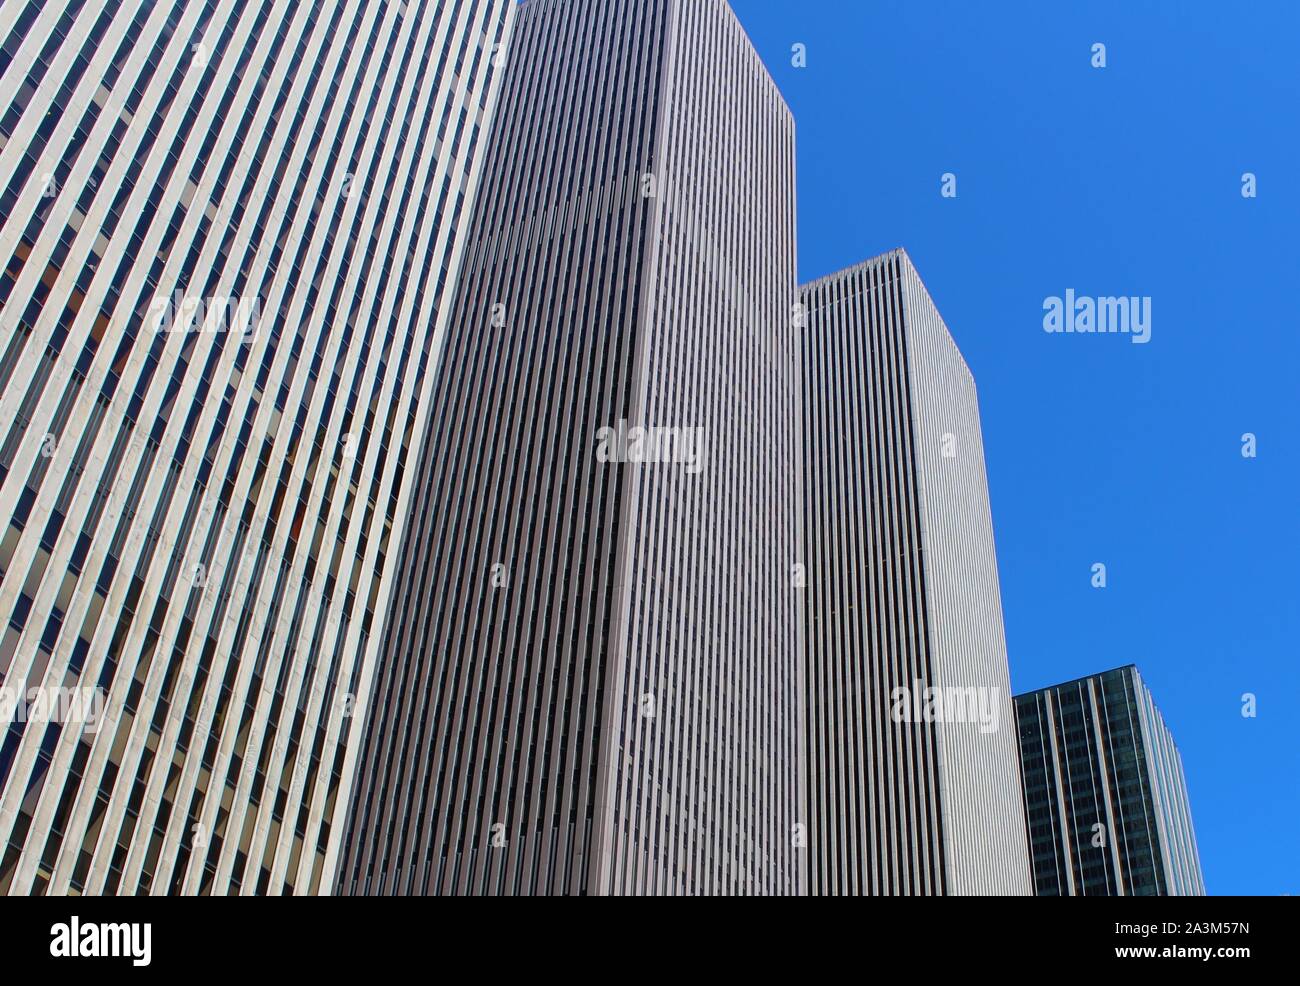 Tall, genérico, rascacielos, edificios en la Ciudad de Nueva York. Ilustra los conceptos de tamaño, líneas rectas y "jungla de asfalto" Foto de stock